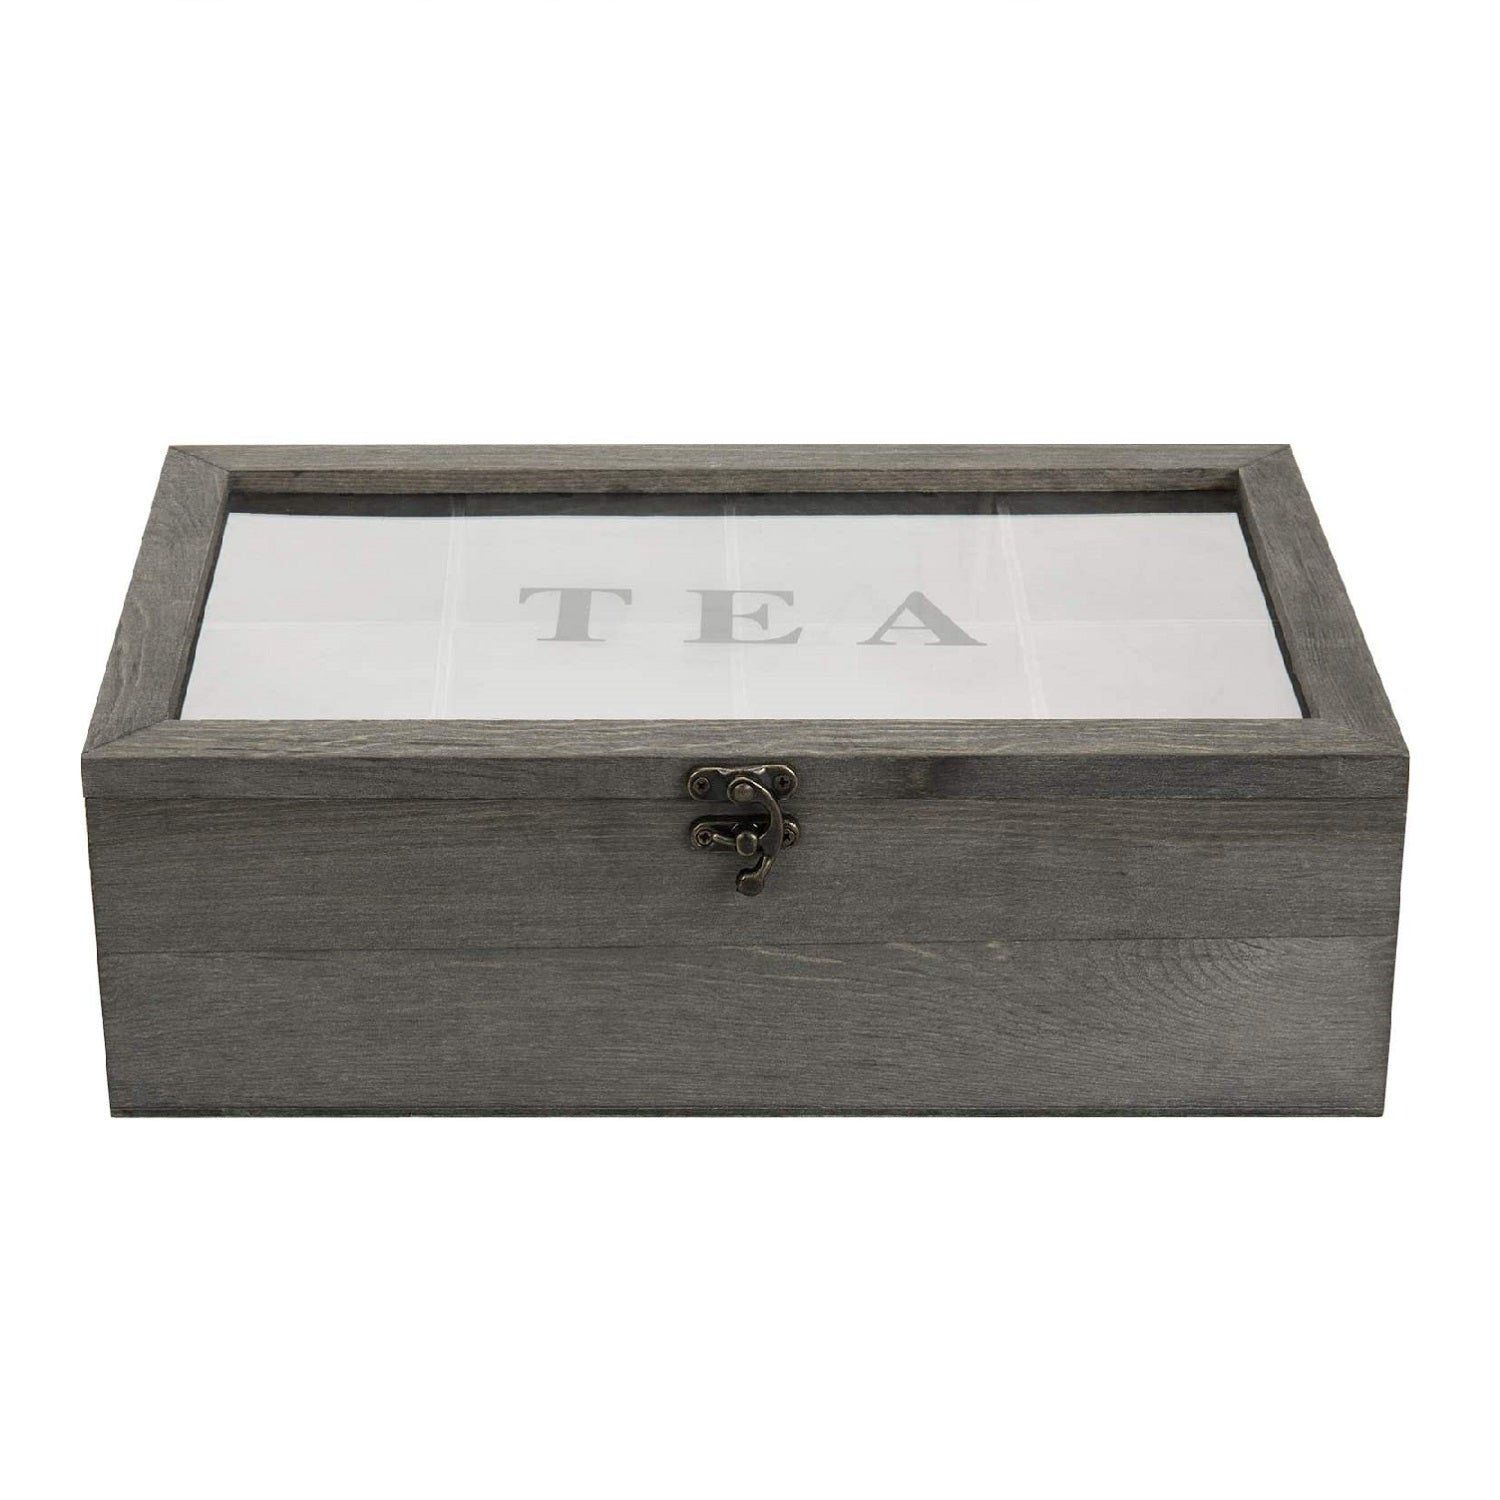 Caja vintage para almacenar bolsas de te, cocinas y decoracion